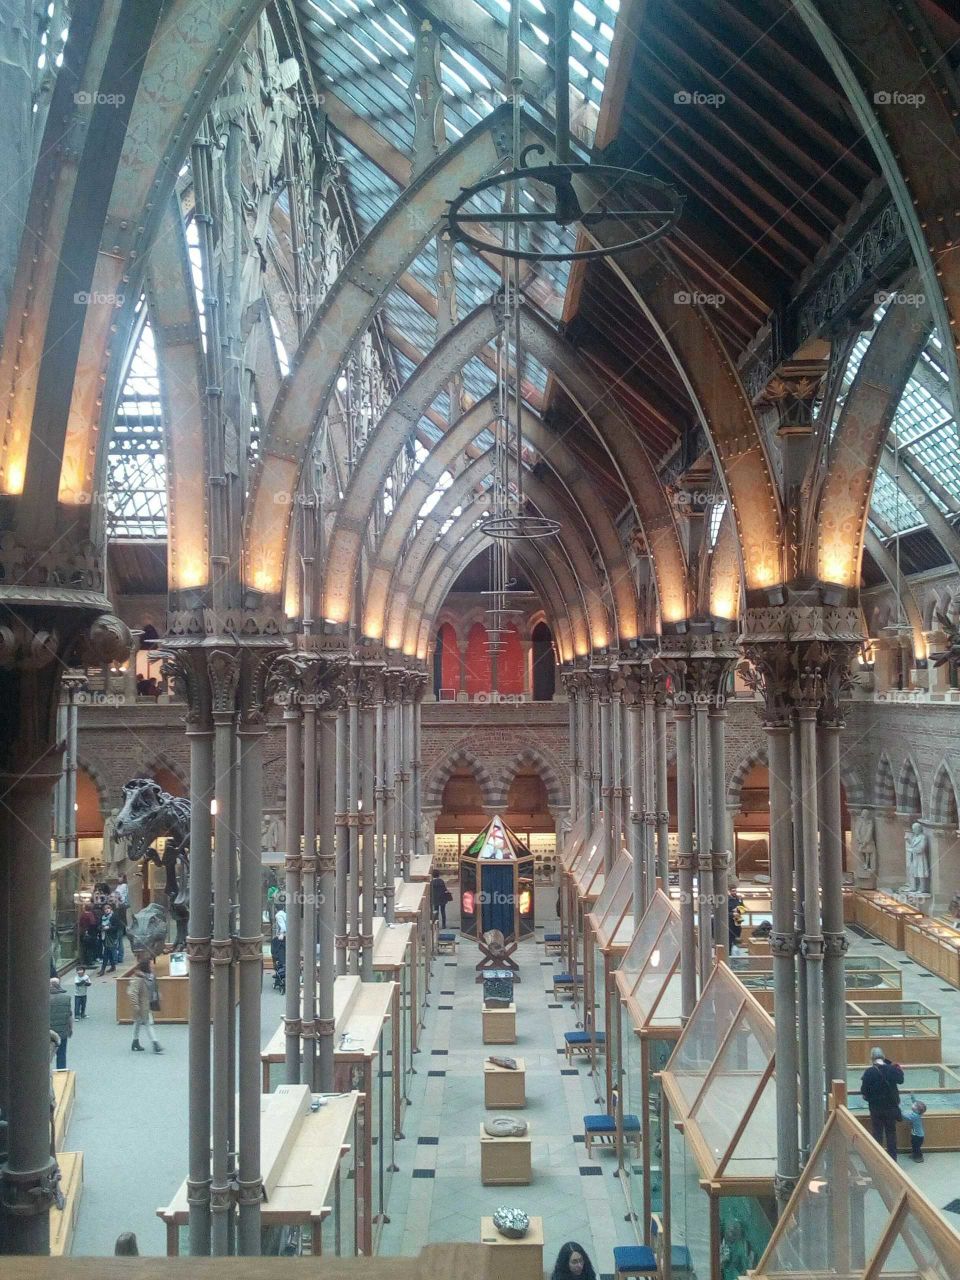 Museum, symmetry, columns